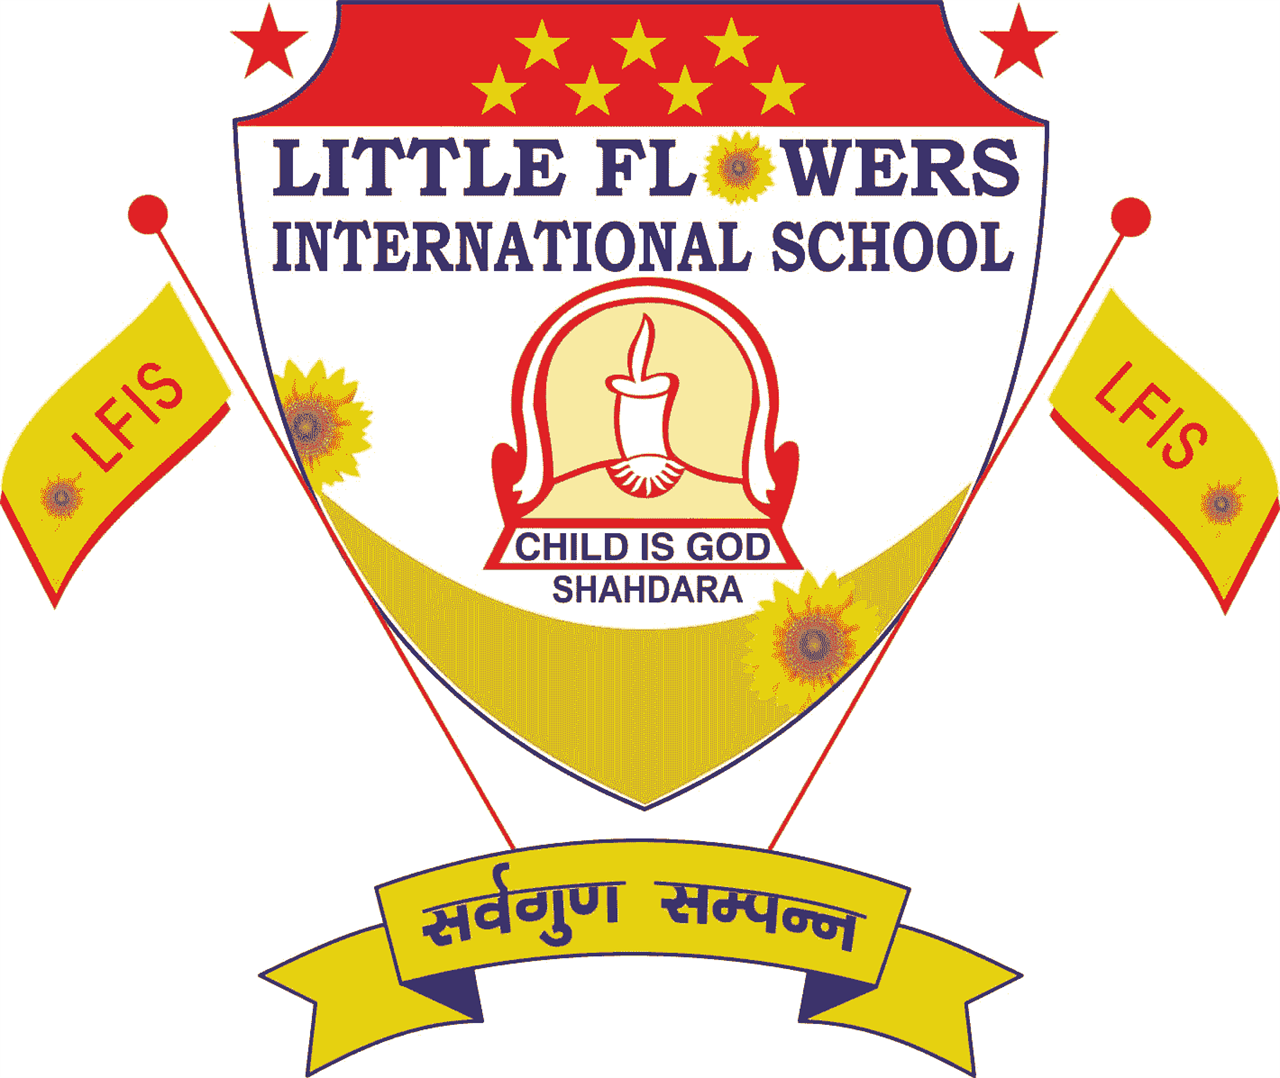 Little Flower International School